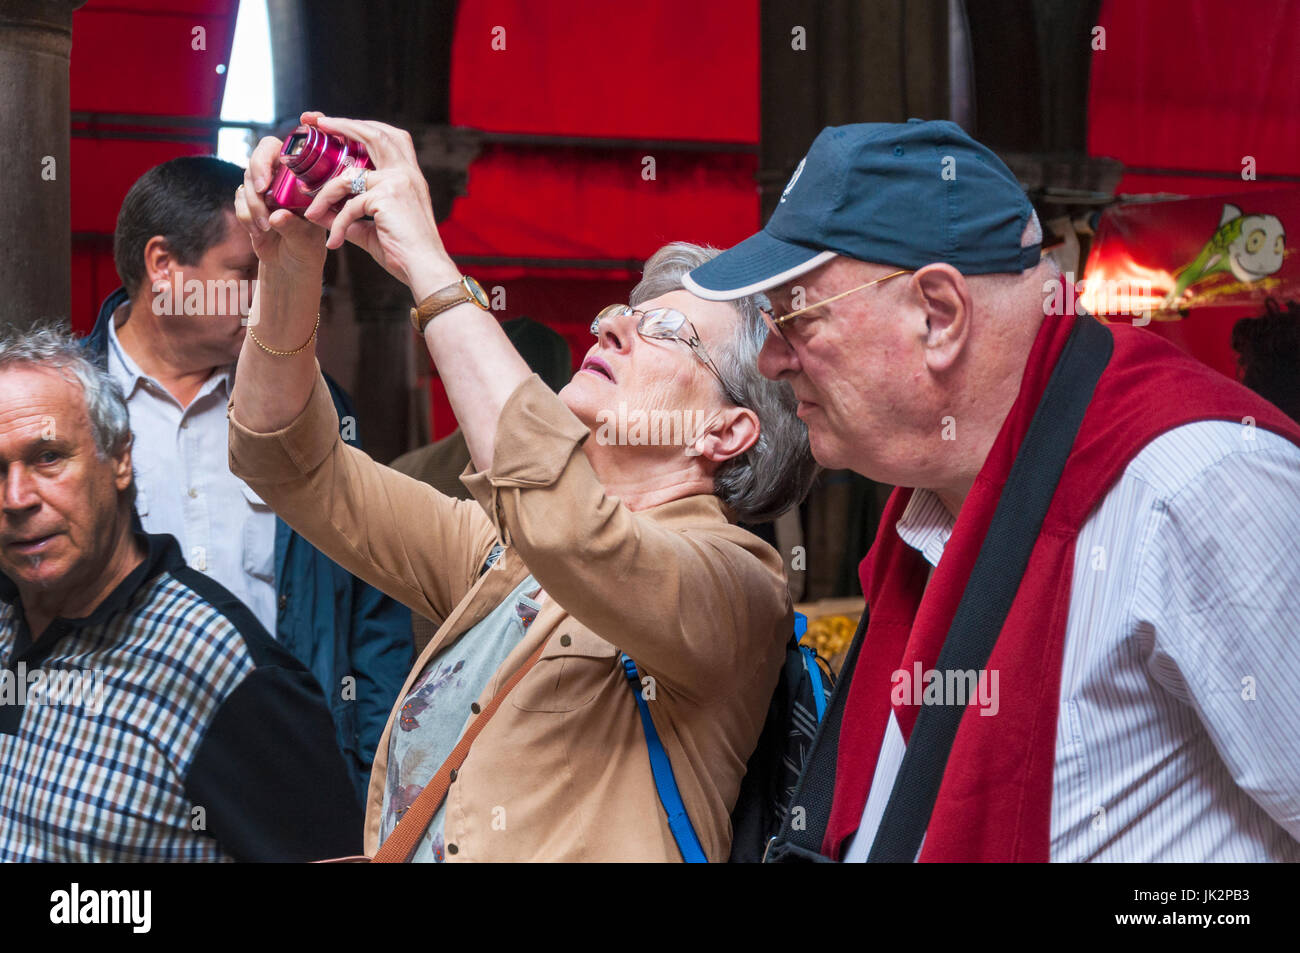 Touriste prend une photo numérique au marché du Rialto à Venise Italie Banque D'Images